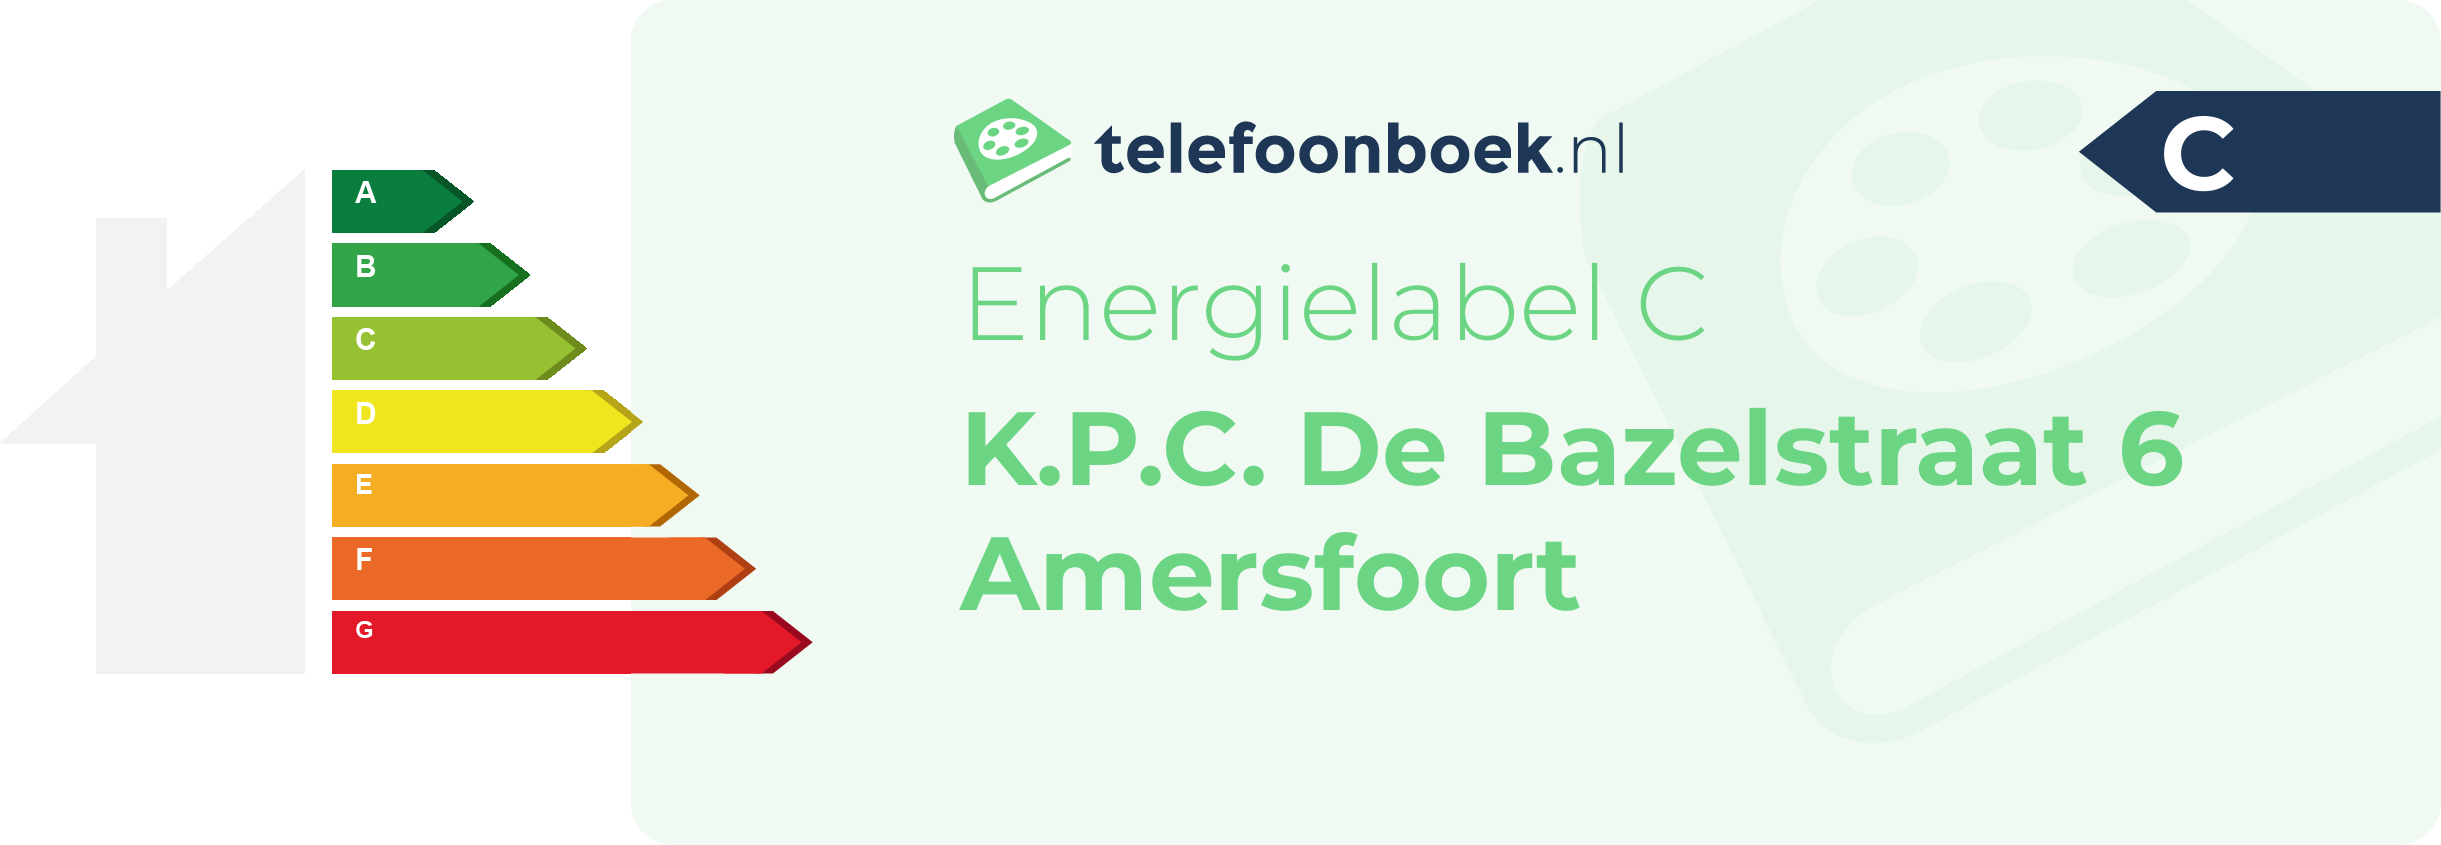 Energielabel K.P.C. De Bazelstraat 6 Amersfoort